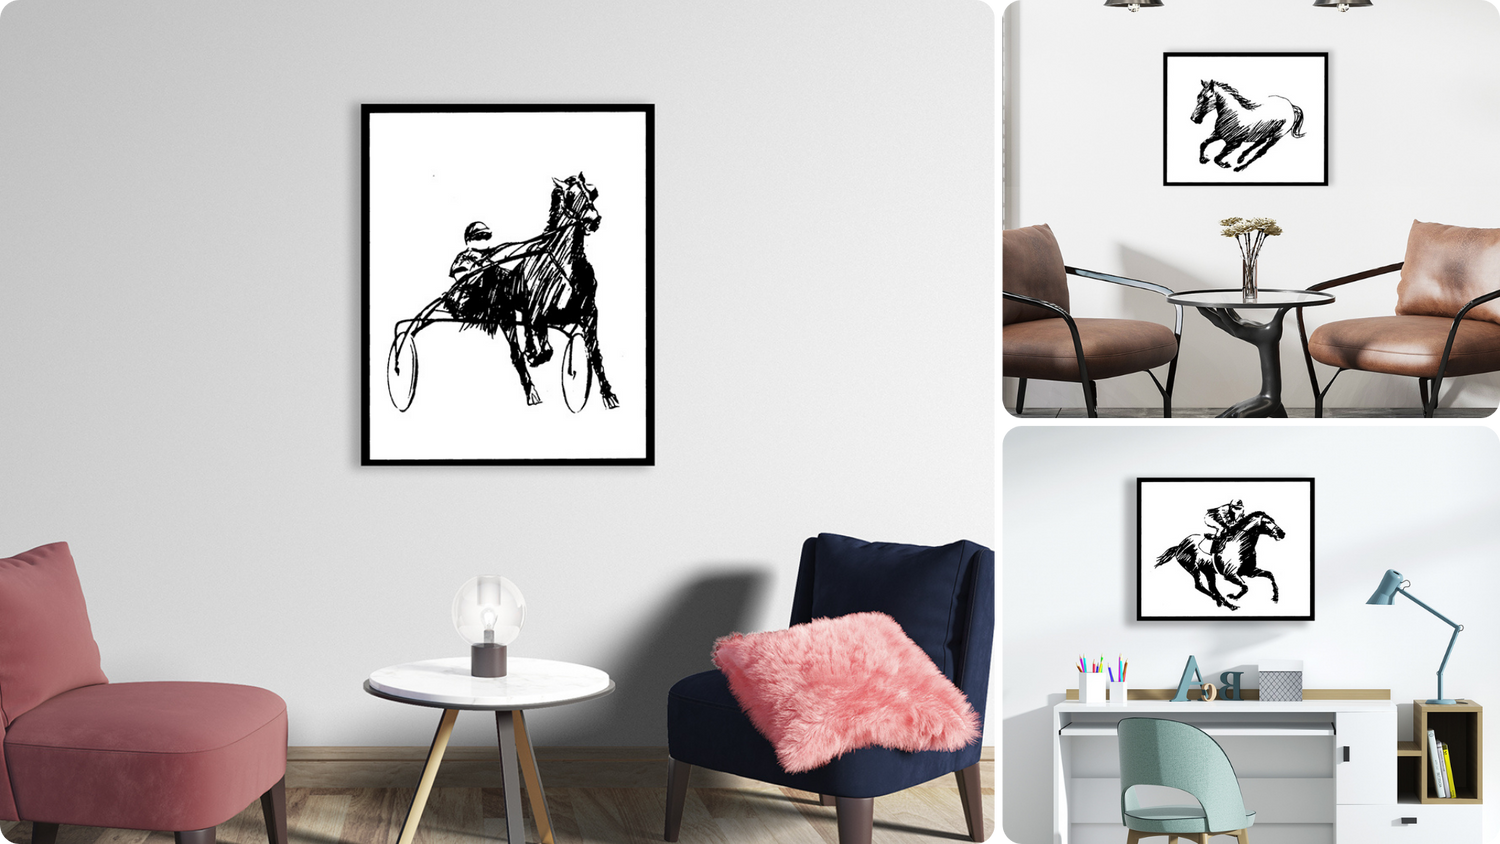 Una serie di opere d'arte monocromatiche che raffigurano eleganti figure equine in movimento, firmate da Amleto Dalla Costa, perfette per aggiungere un tocco di dinamismo ed eleganza a qualsiasi ambiente.